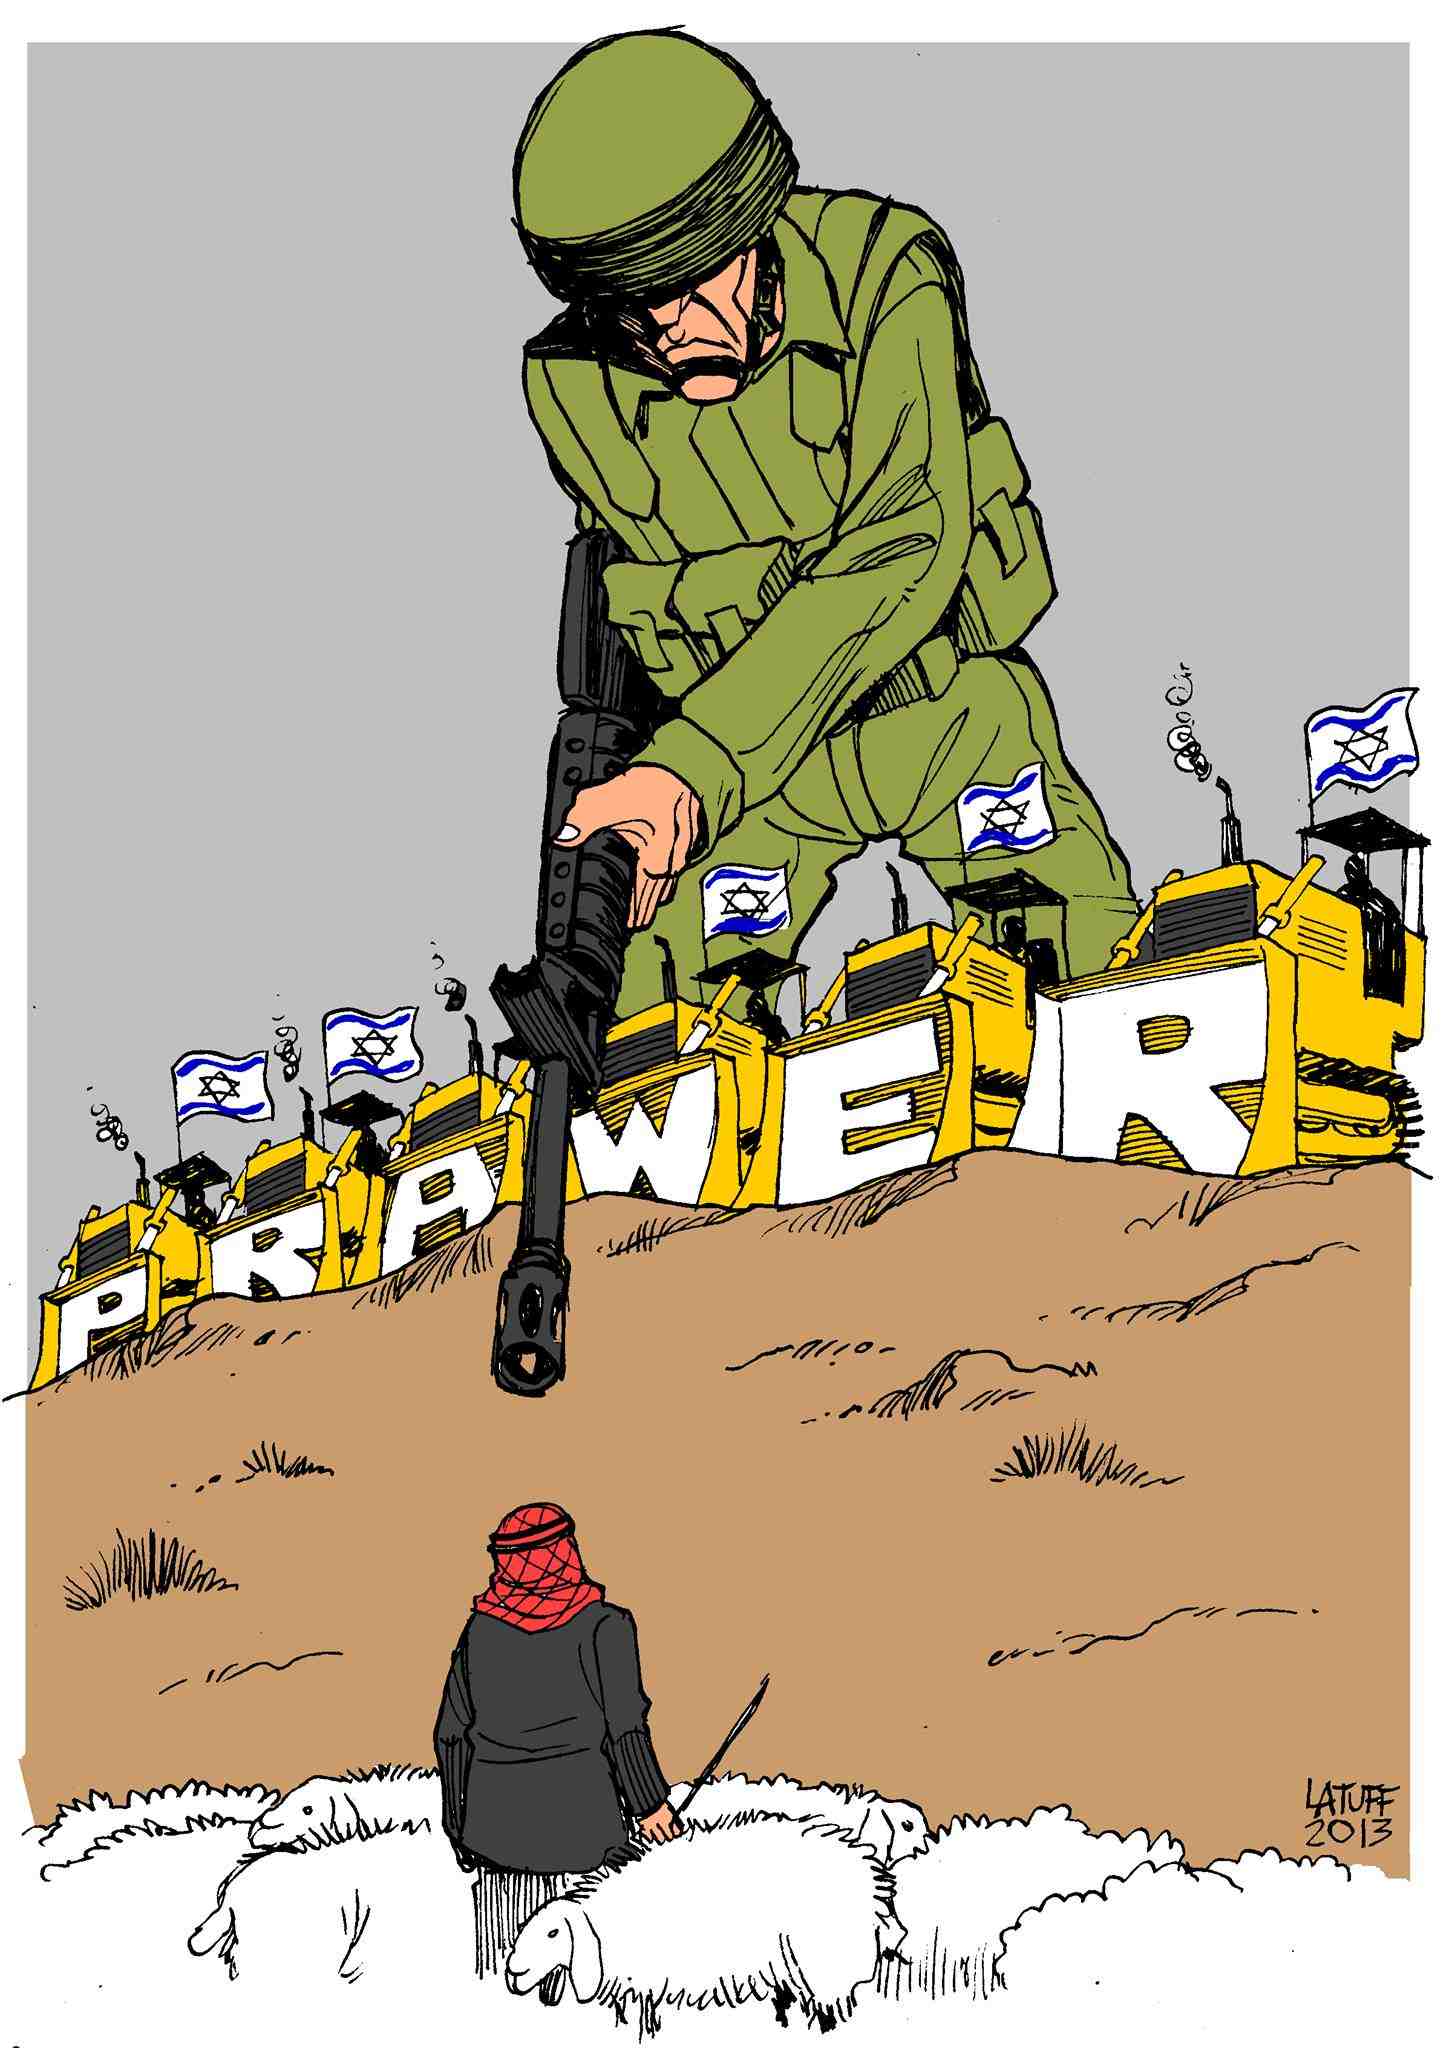 Carlos_Latuff.jpg